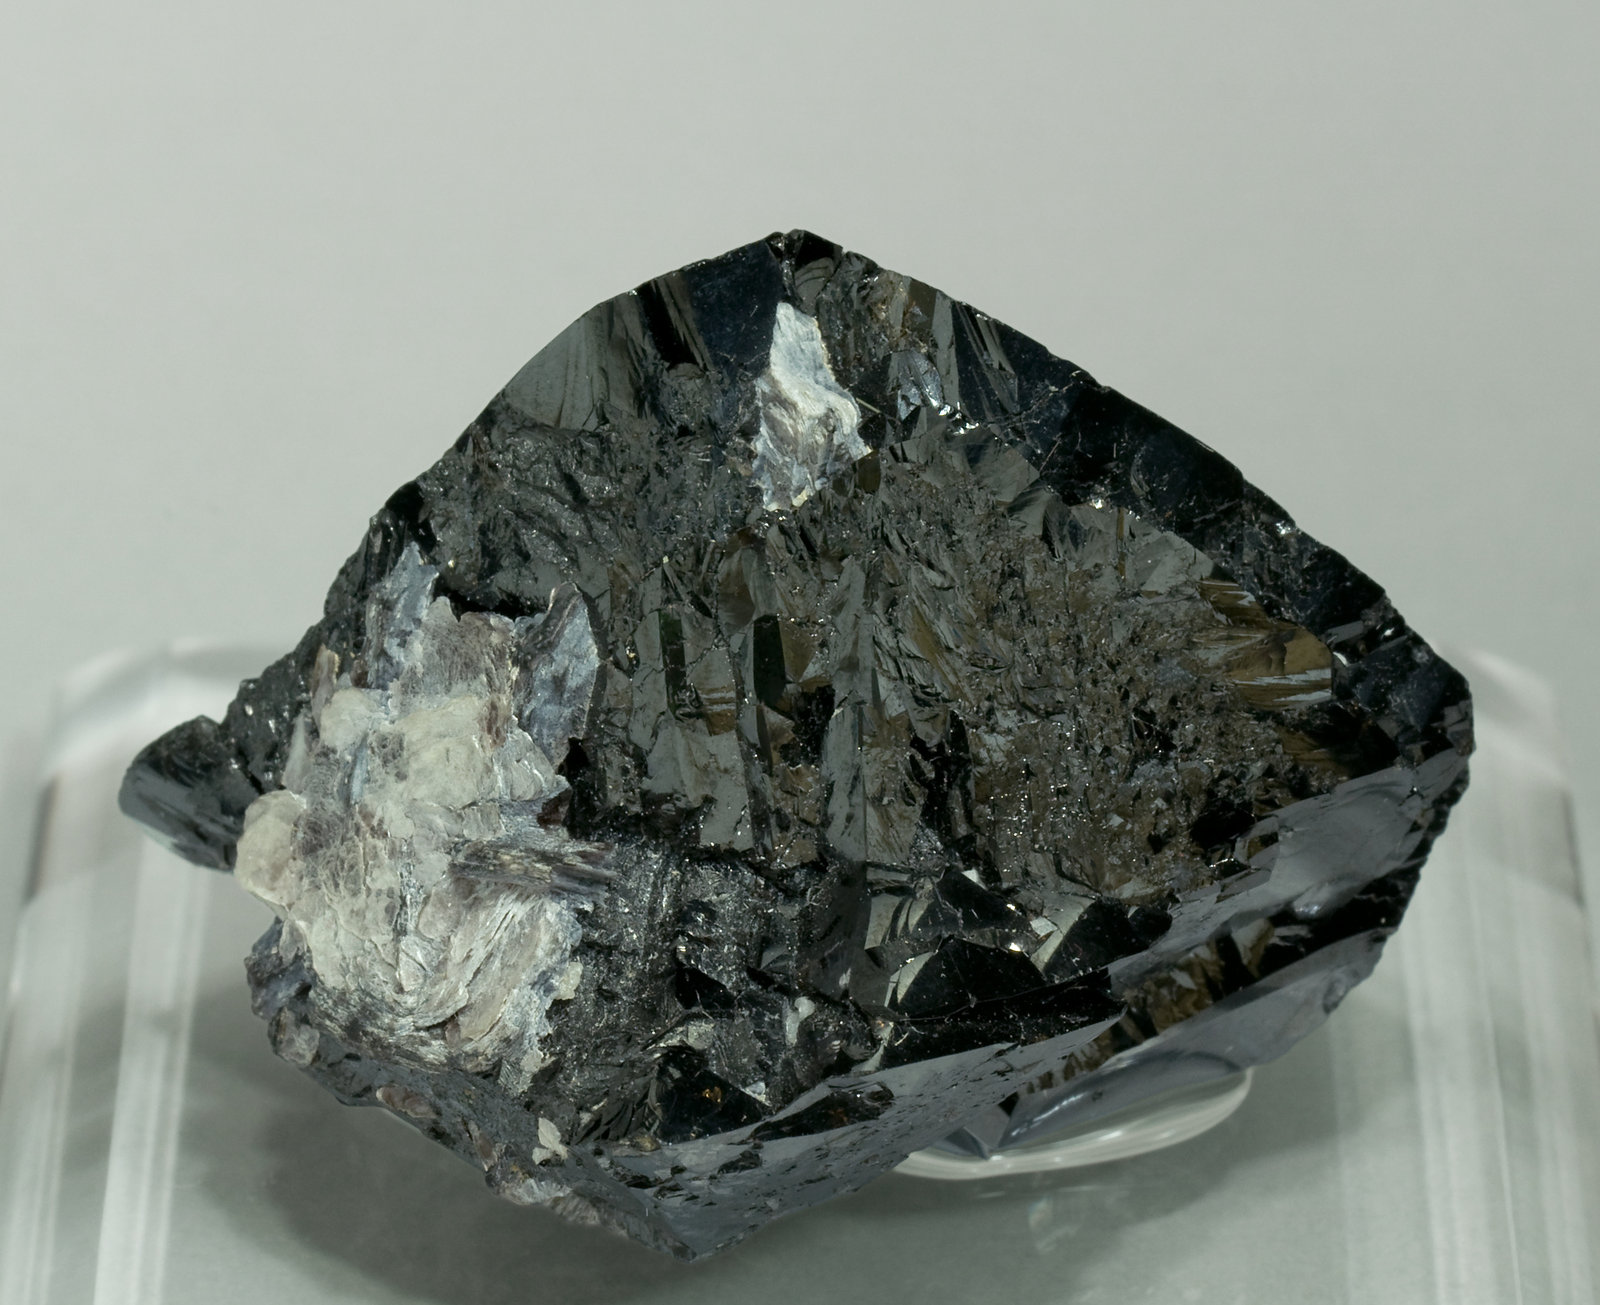 specimens/s_imagesW0/Cassiterite-JK48W0f.jpg